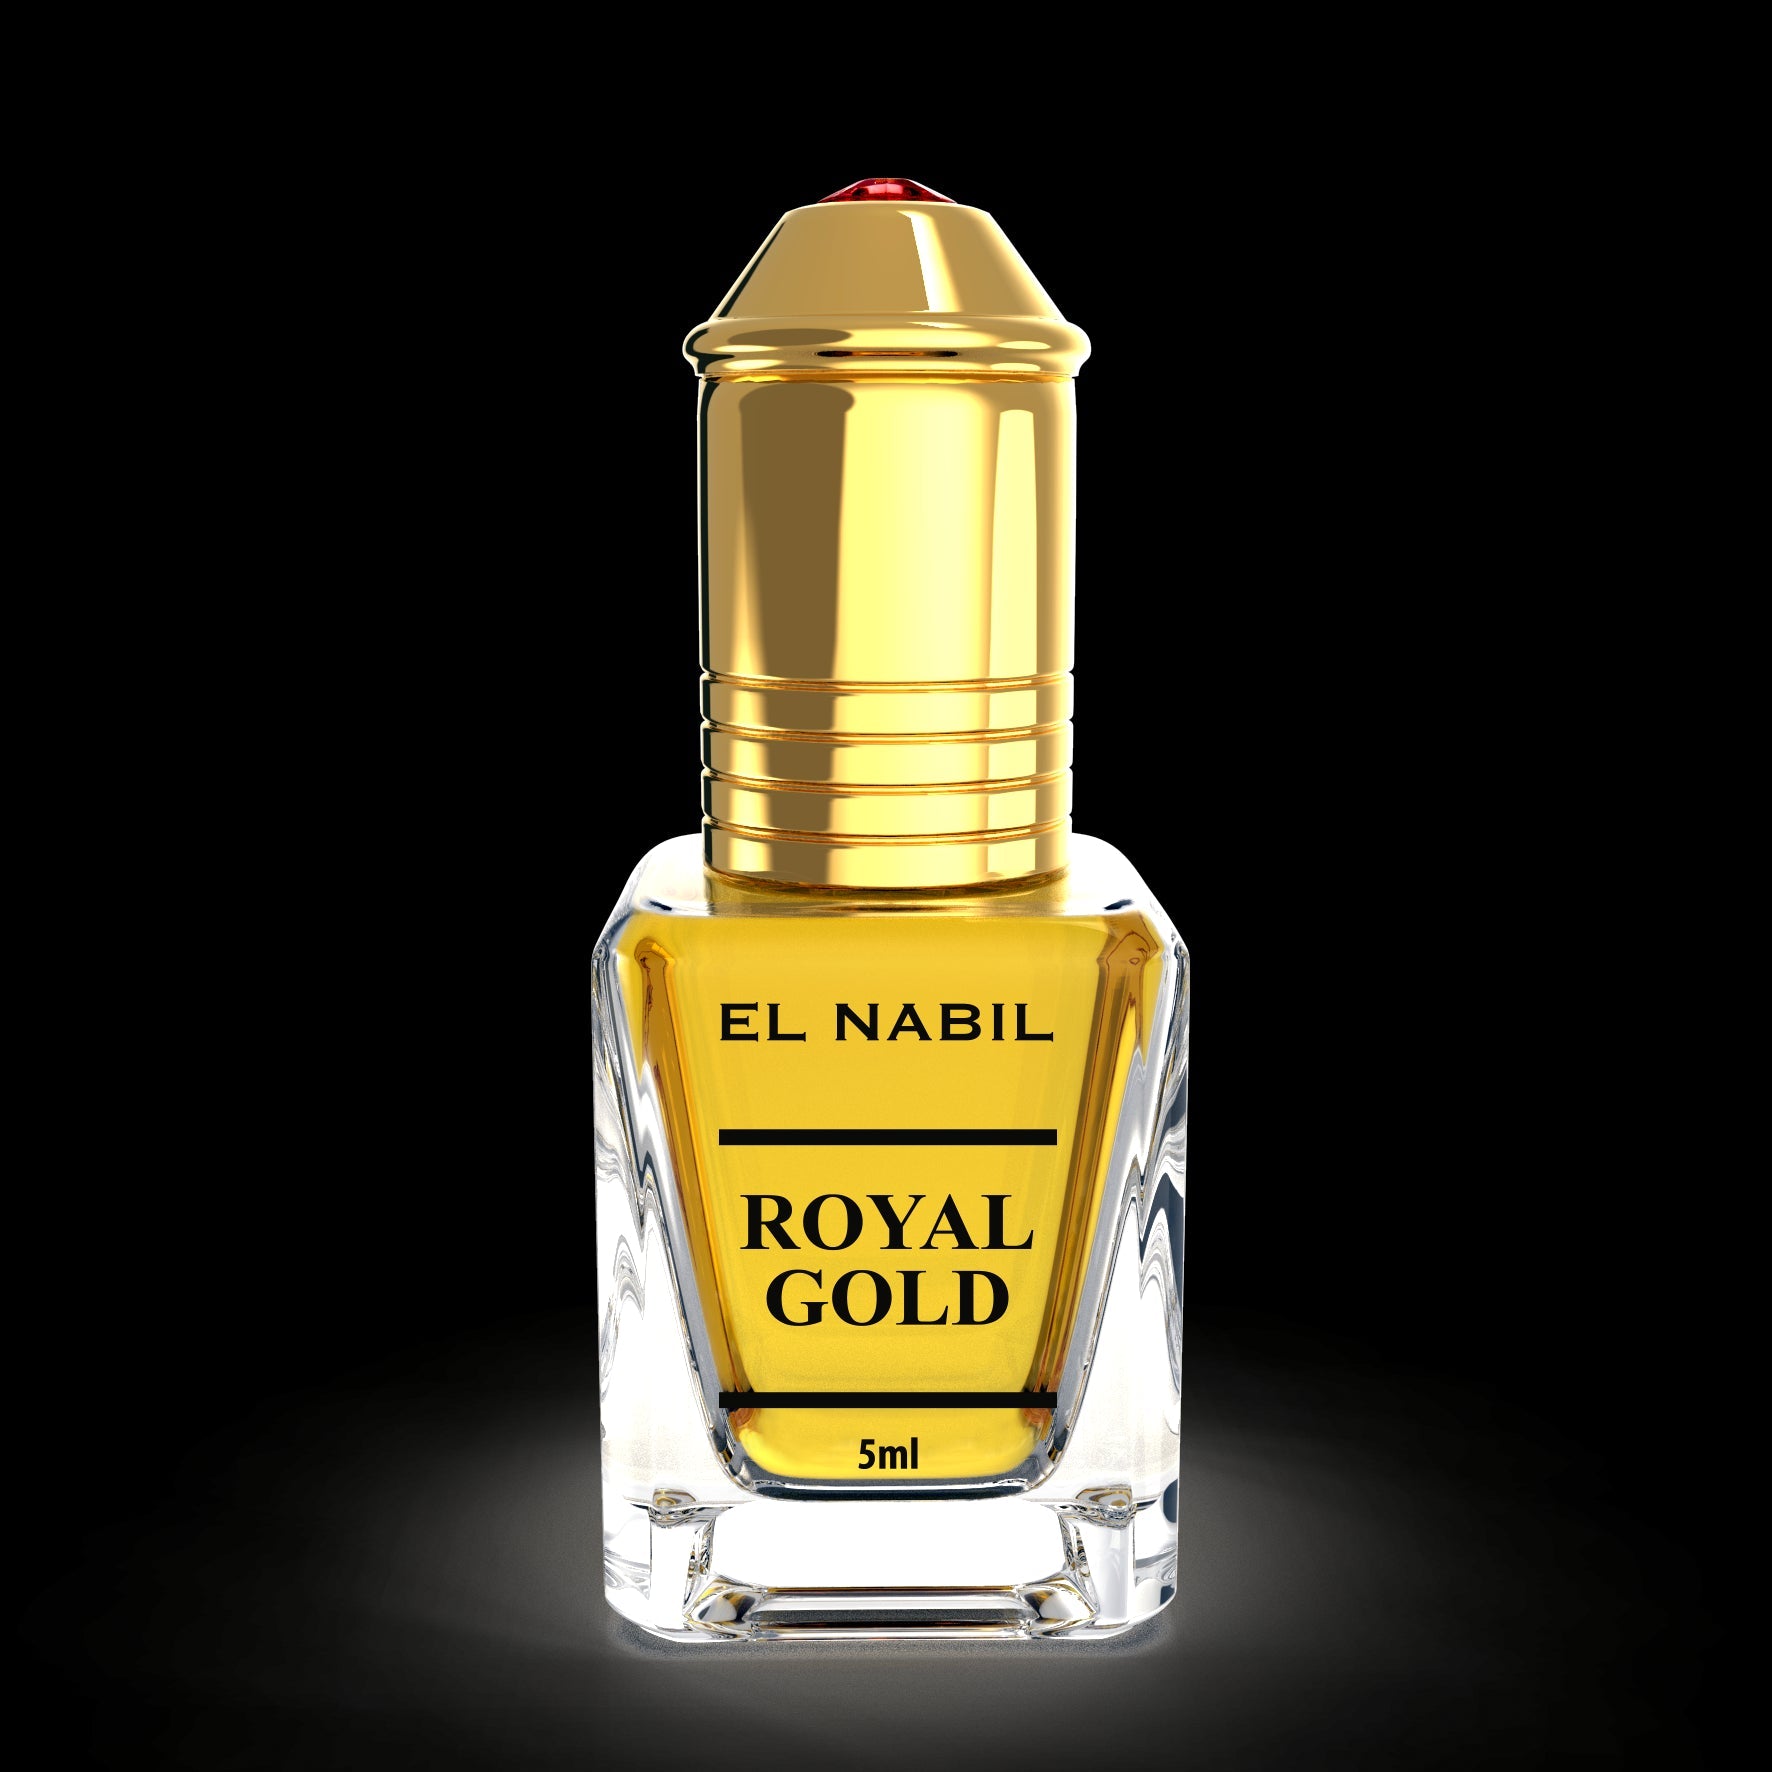 Royal gold - El-Nabil